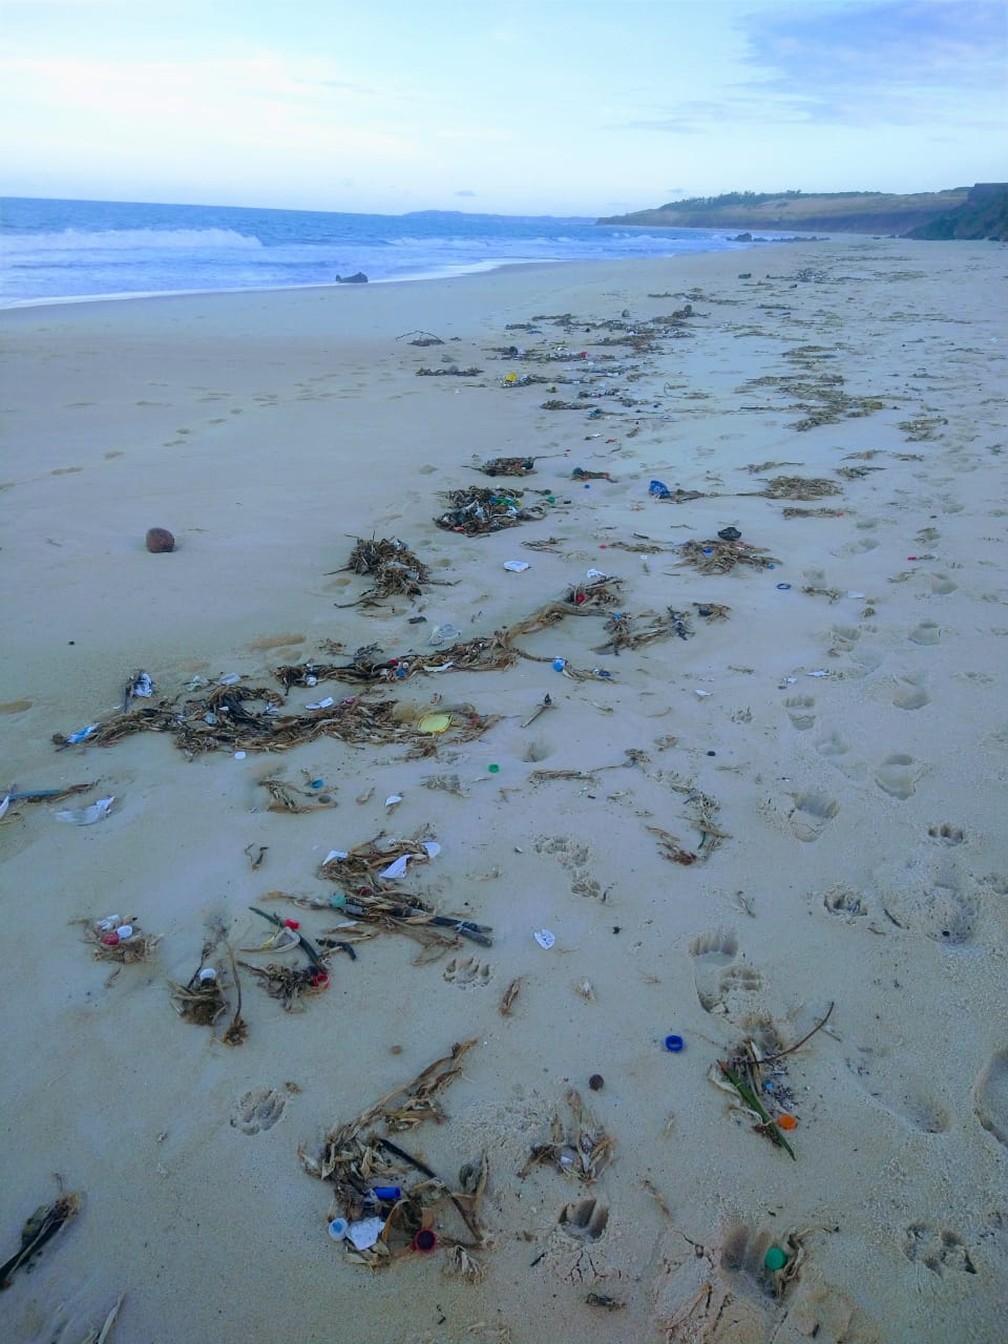 Meia tonelada de lixo é encontrada na praia da Pipa e prefeitura avalia  impacto em área de desova de tartarugas | Rio Grande do Norte | G1